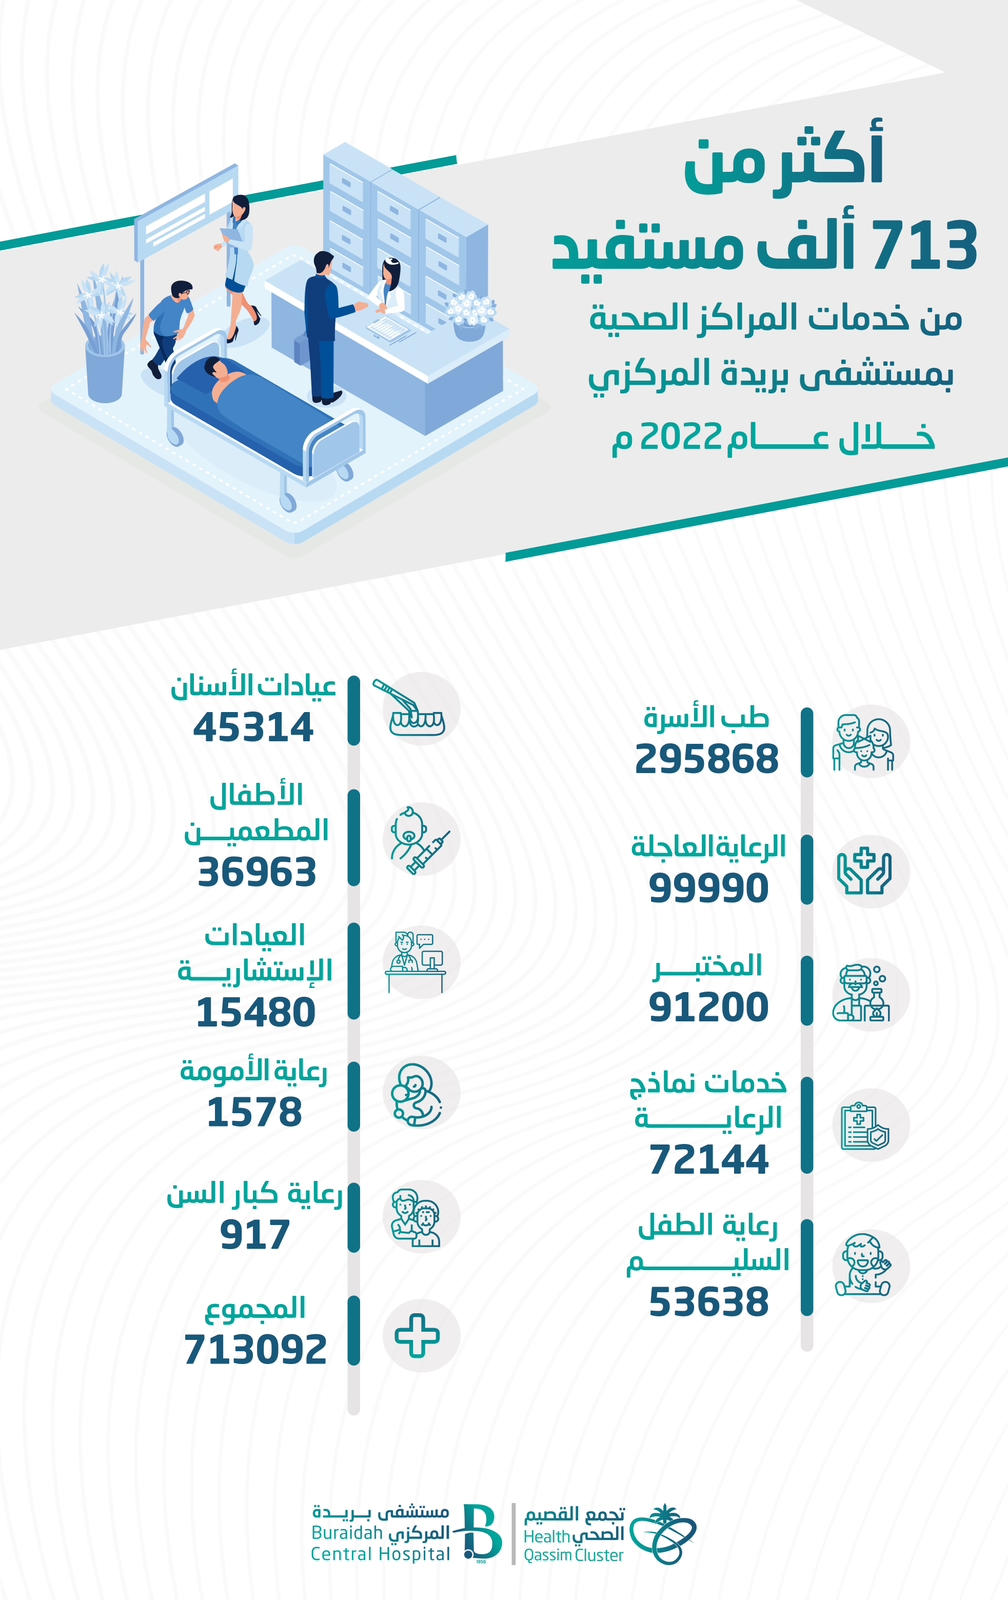 أكثر من 713 ألف مستفيد من خدمات المراكز الصحية بمستشفى بريدة المركزي خلال عام 2022م